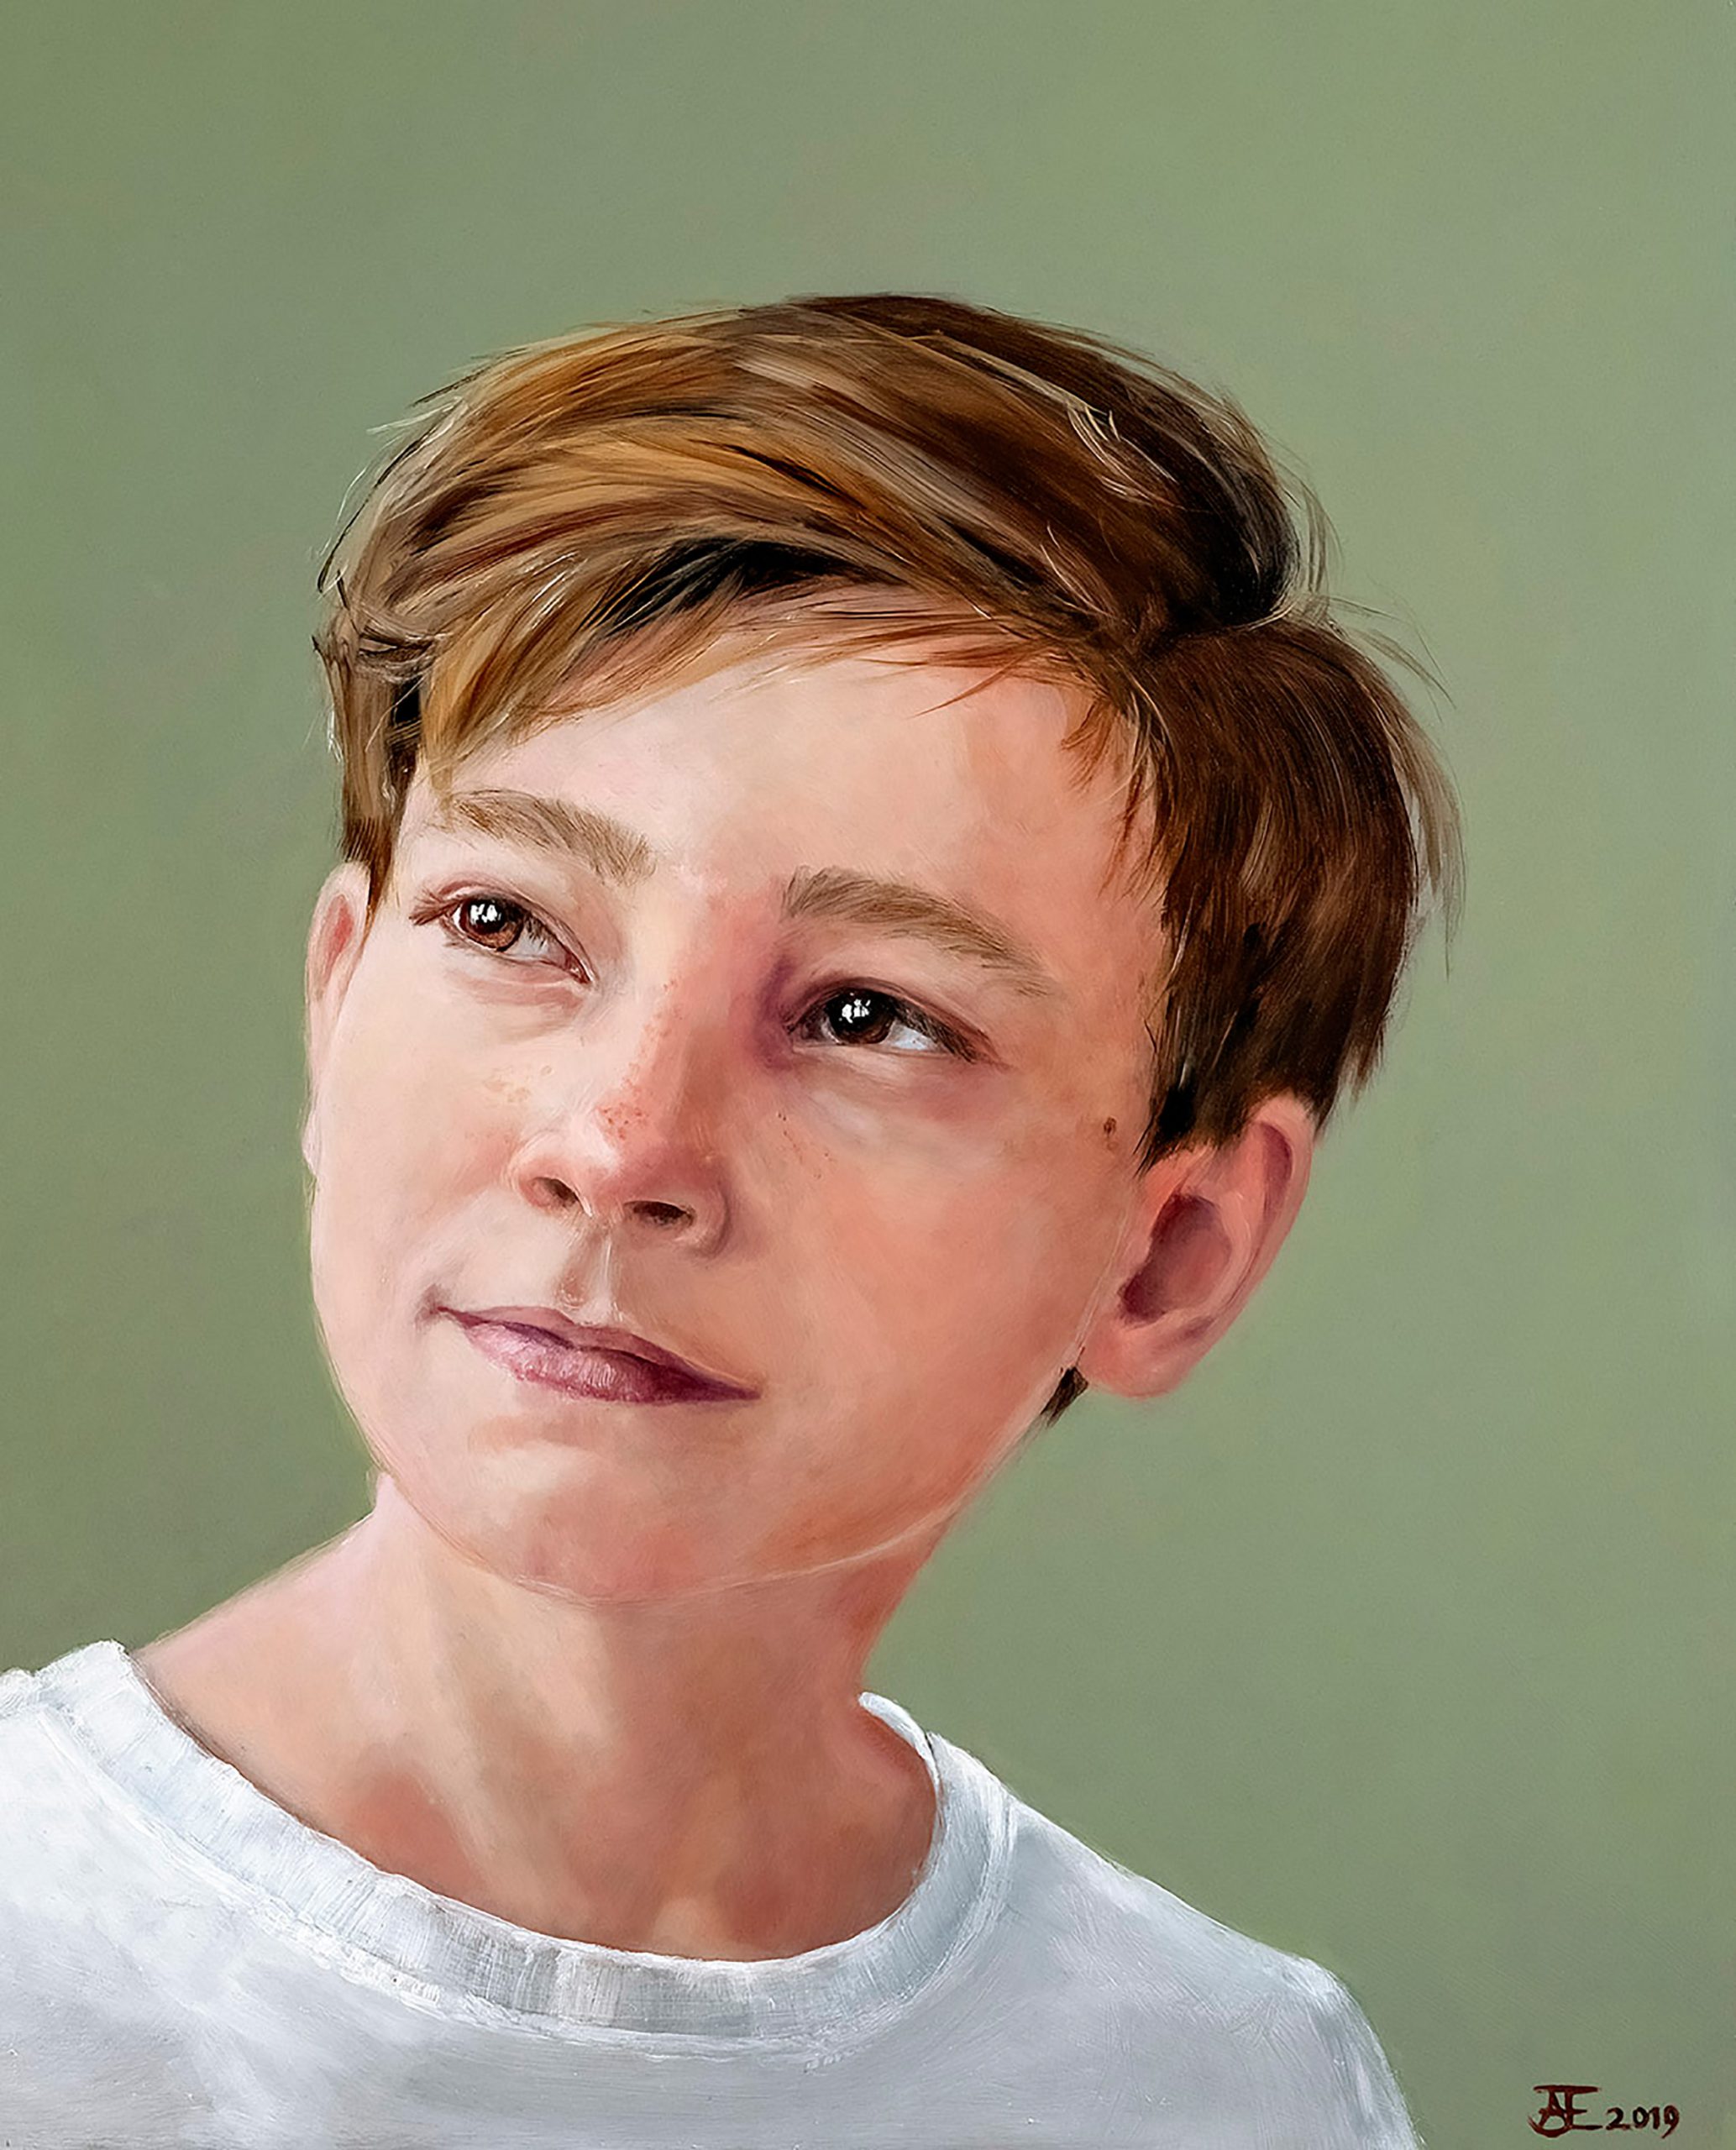 Een olieverfportret op een paneel van 40 x 50 cm, in opdracht geschilderd, toont een jongen met donkerblond haar genaamd Freek tegen een groene achtergrond. Dit kunstwerk is in 2019 geschilderd door portretschilder Anneke Ensing.